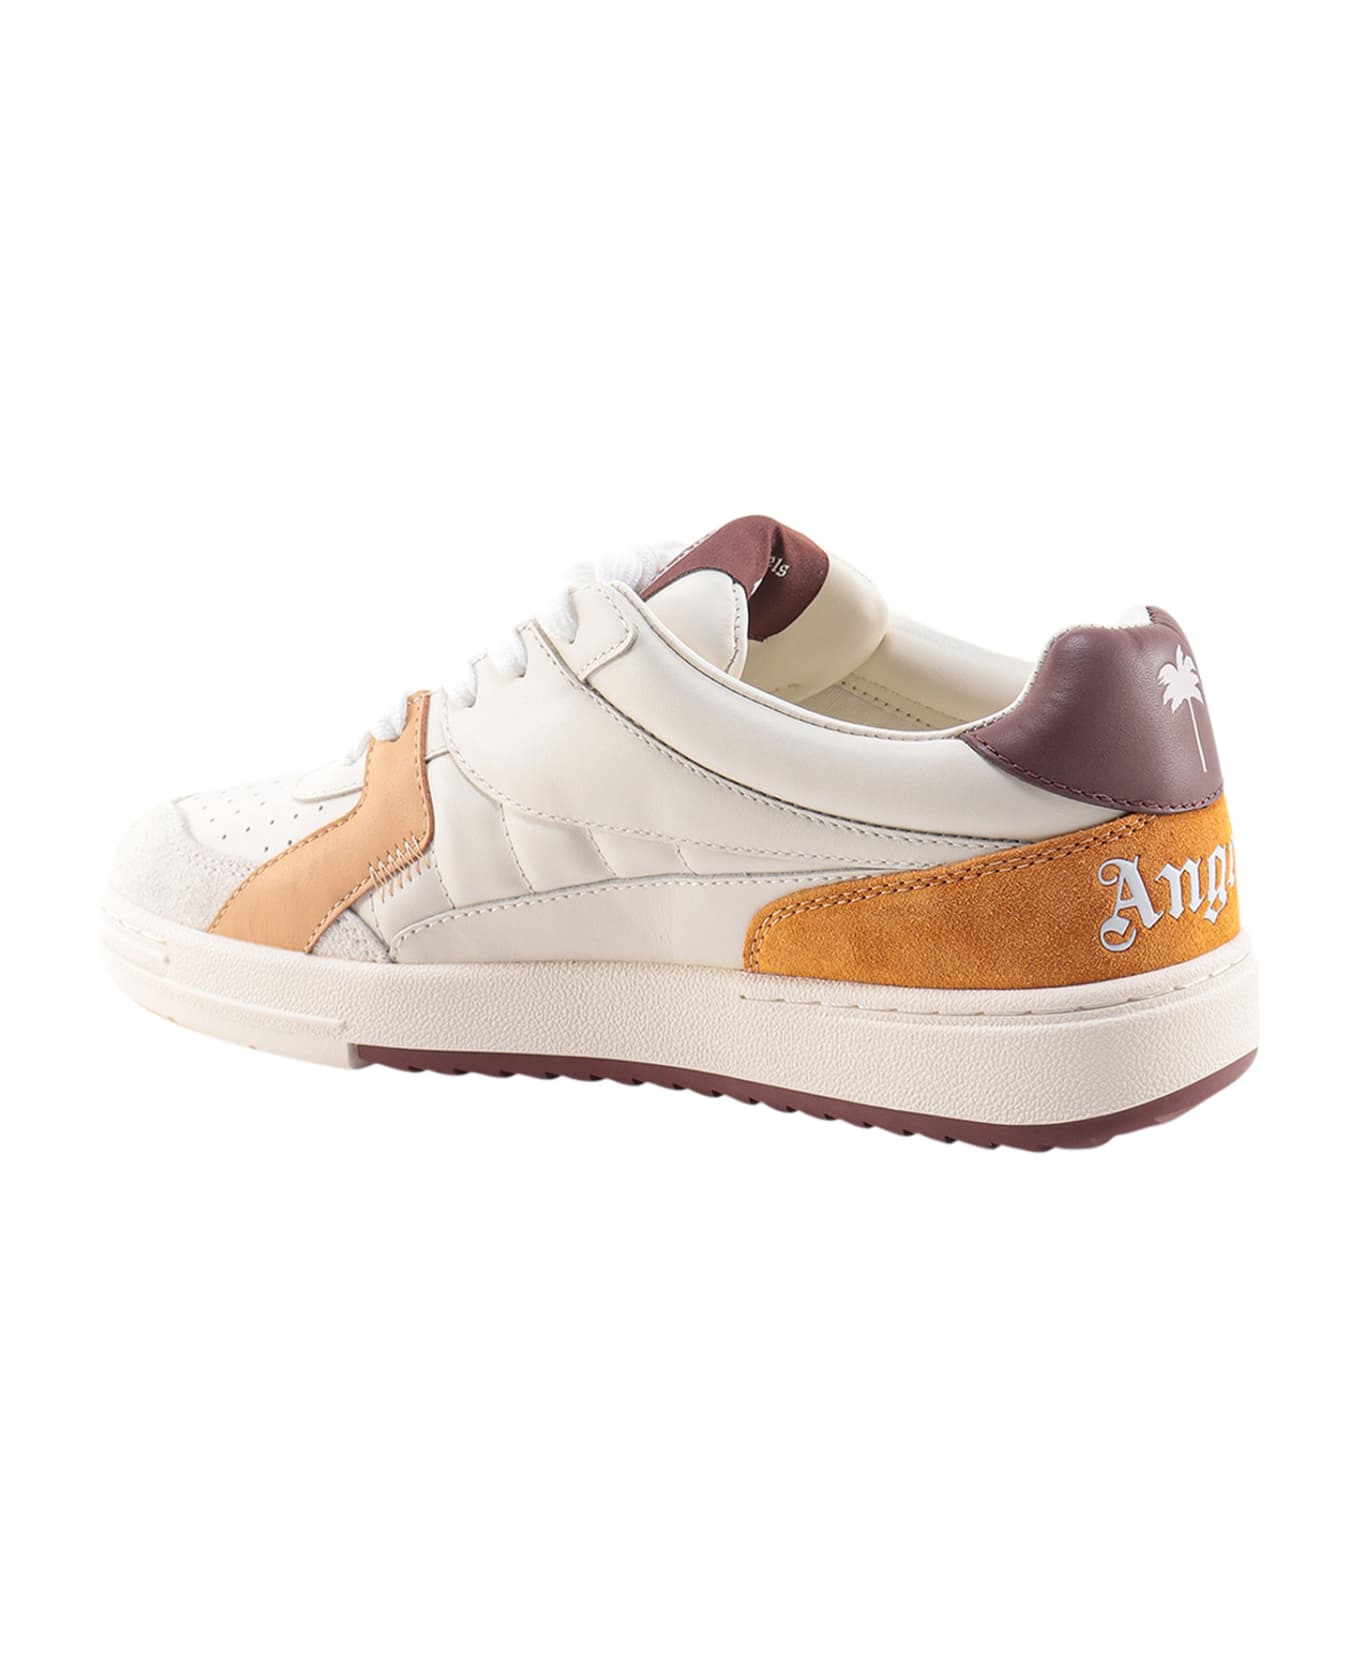 Palm Angels Sneakers - Beige/marrone